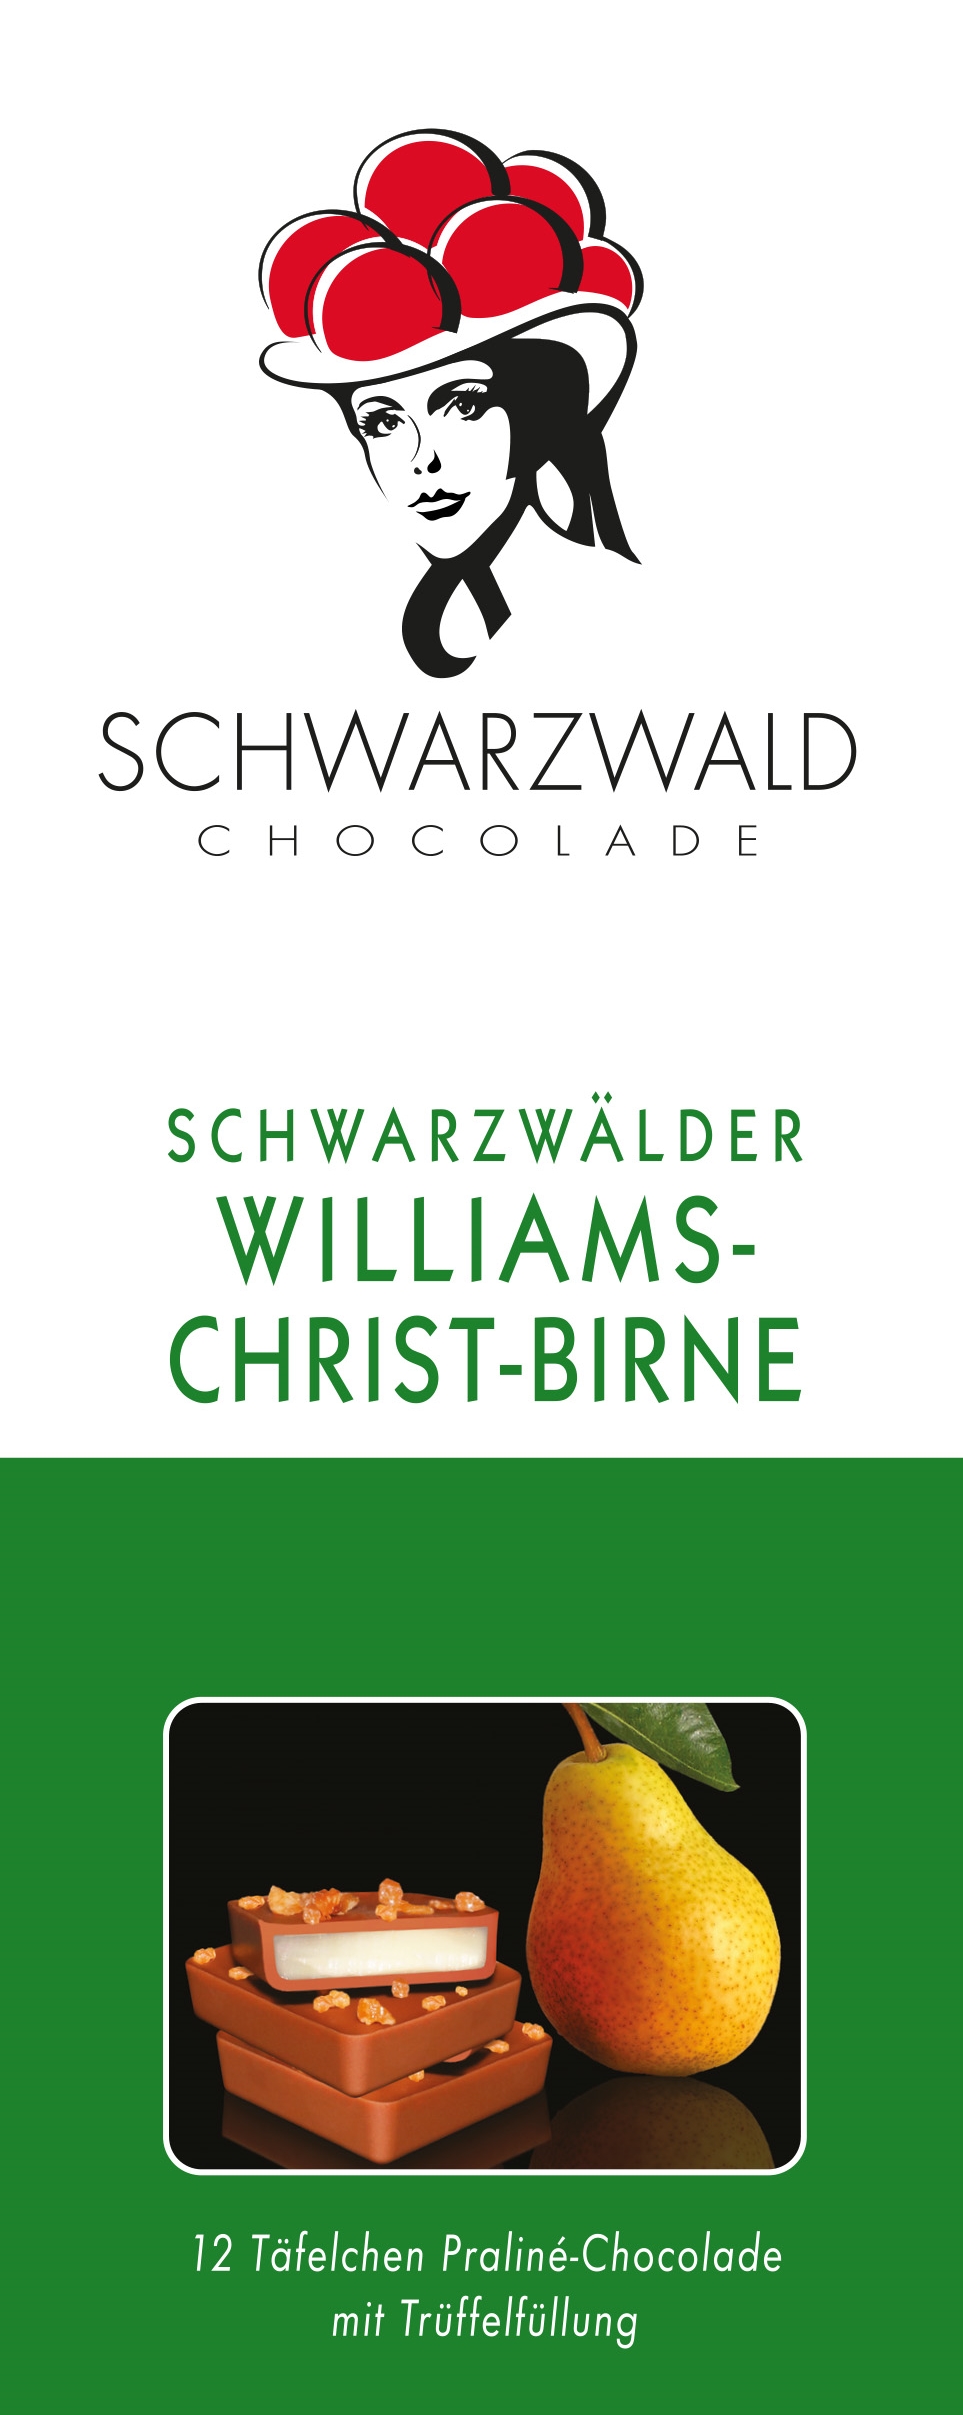 Schwarzwald Chocolade, Schwarzwälder Williams Christ-Birne 0,1 kg